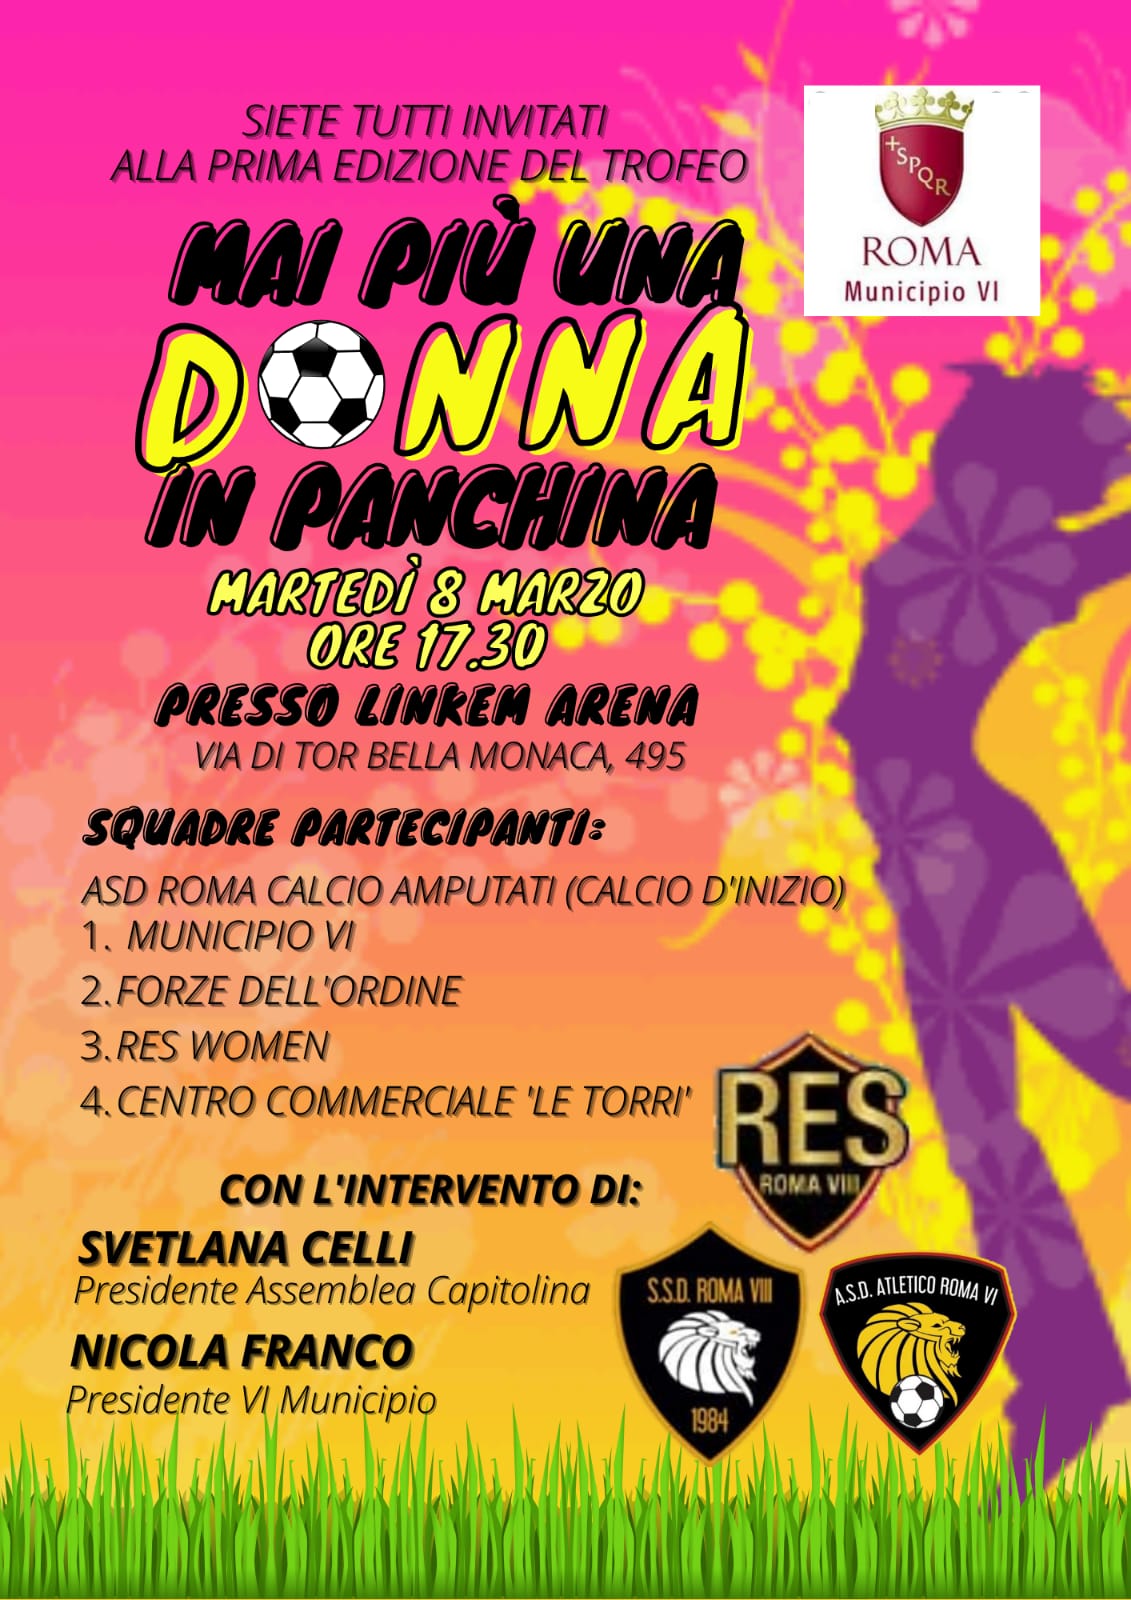 Linkem Res Roma VIII calcio femminile on Twitter: "💥🔜 In occasione della  Giornata Internazionale dei diritti della donna siamo lieti di invitarvi al  primo trofeo "𝐌𝐀𝐈 𝐏𝐈𝐔' 𝐔𝐍𝐀 𝐃𝐎𝐍𝐍𝐀 𝐈𝐍 𝐏𝐀𝐍𝐂𝐇𝐈𝐍𝐀".  L'evento